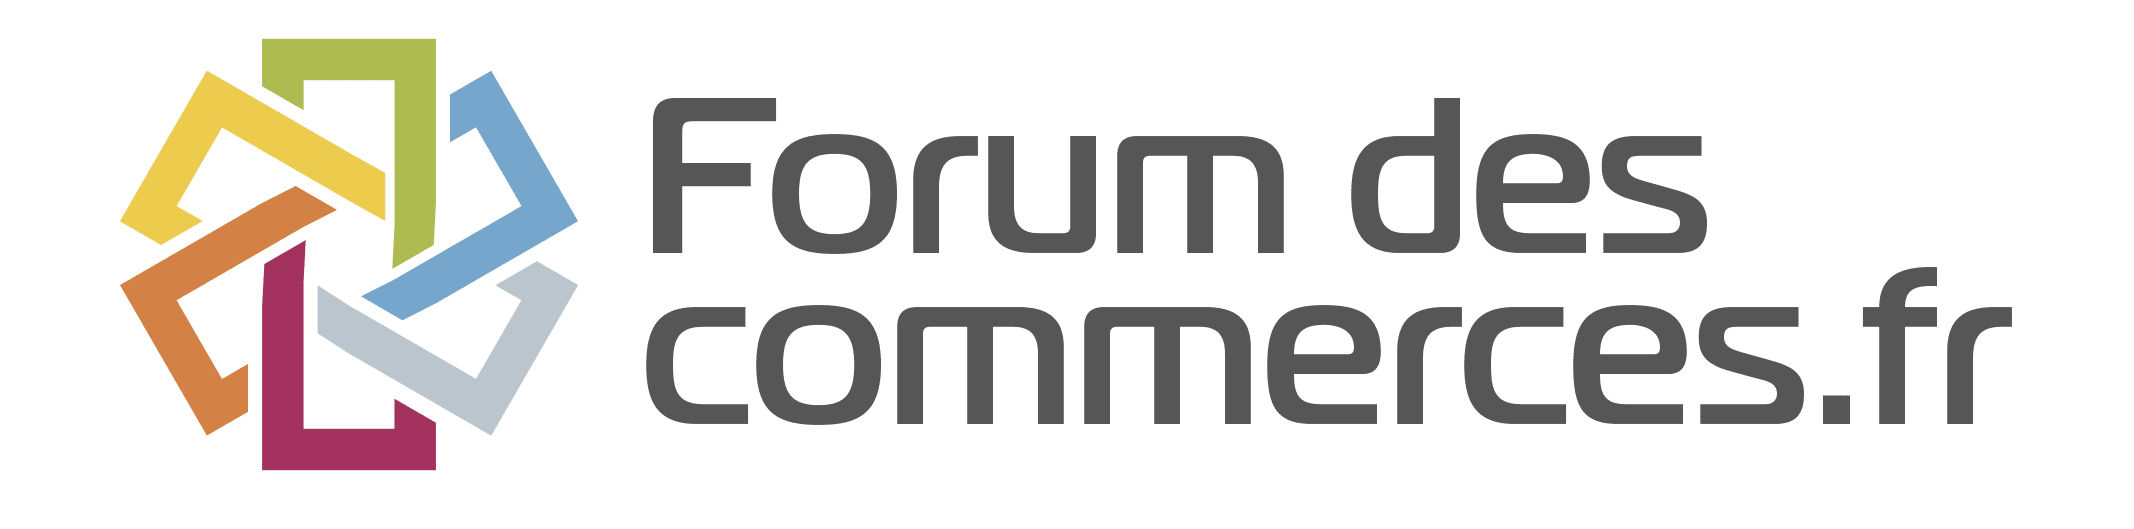 Forum Des Commerces